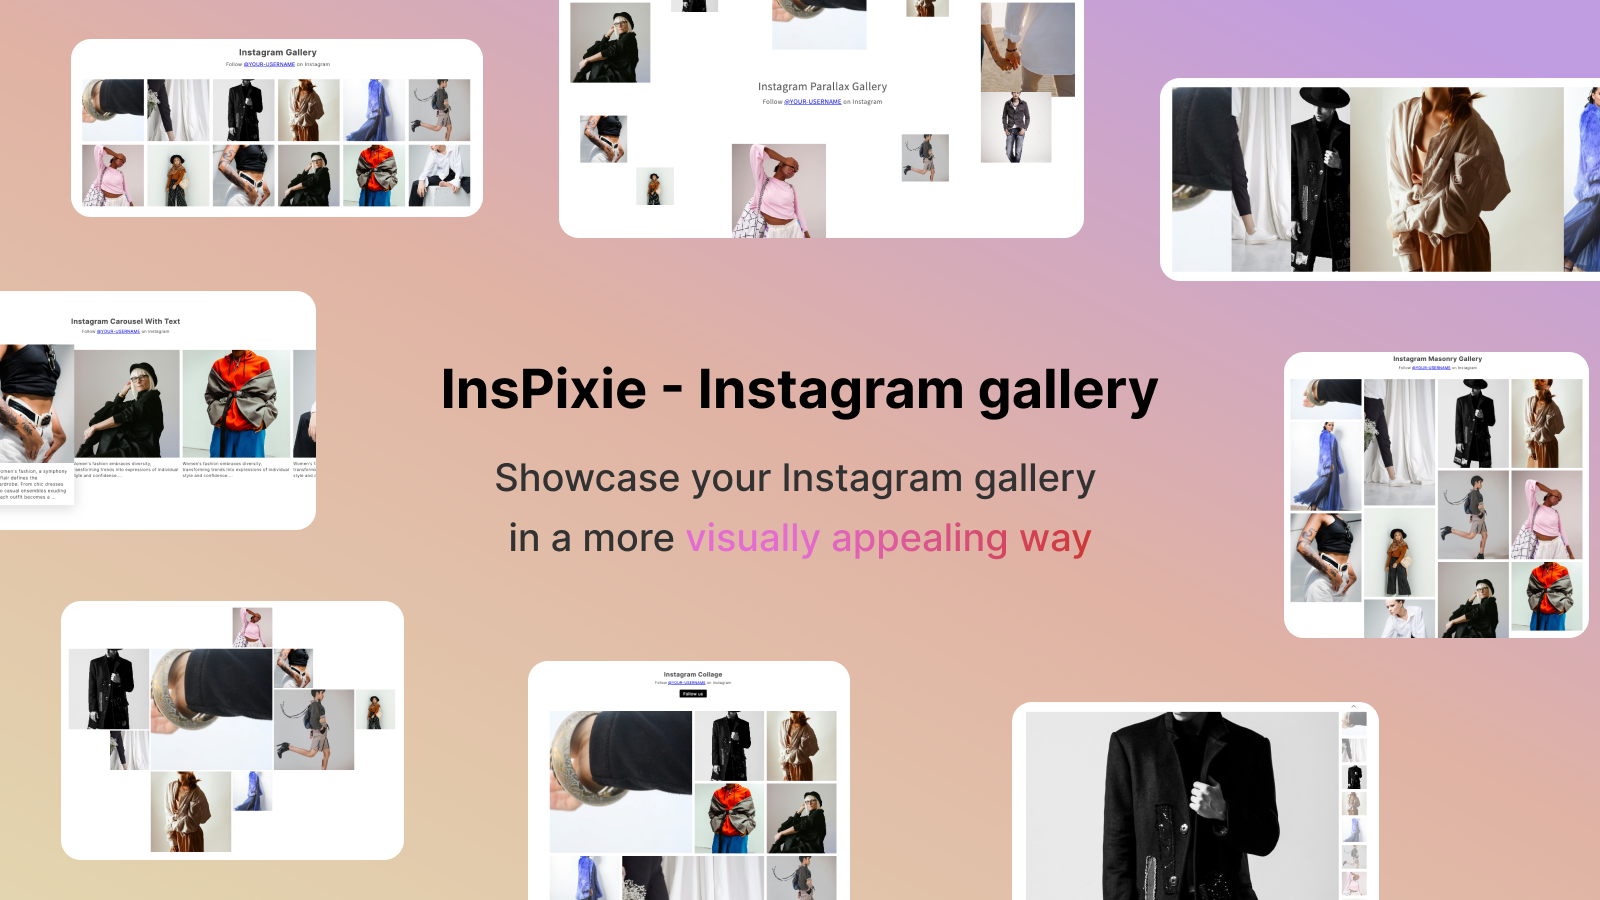 Mostrar el feed de Instagram de una manera más visualmente atractiva